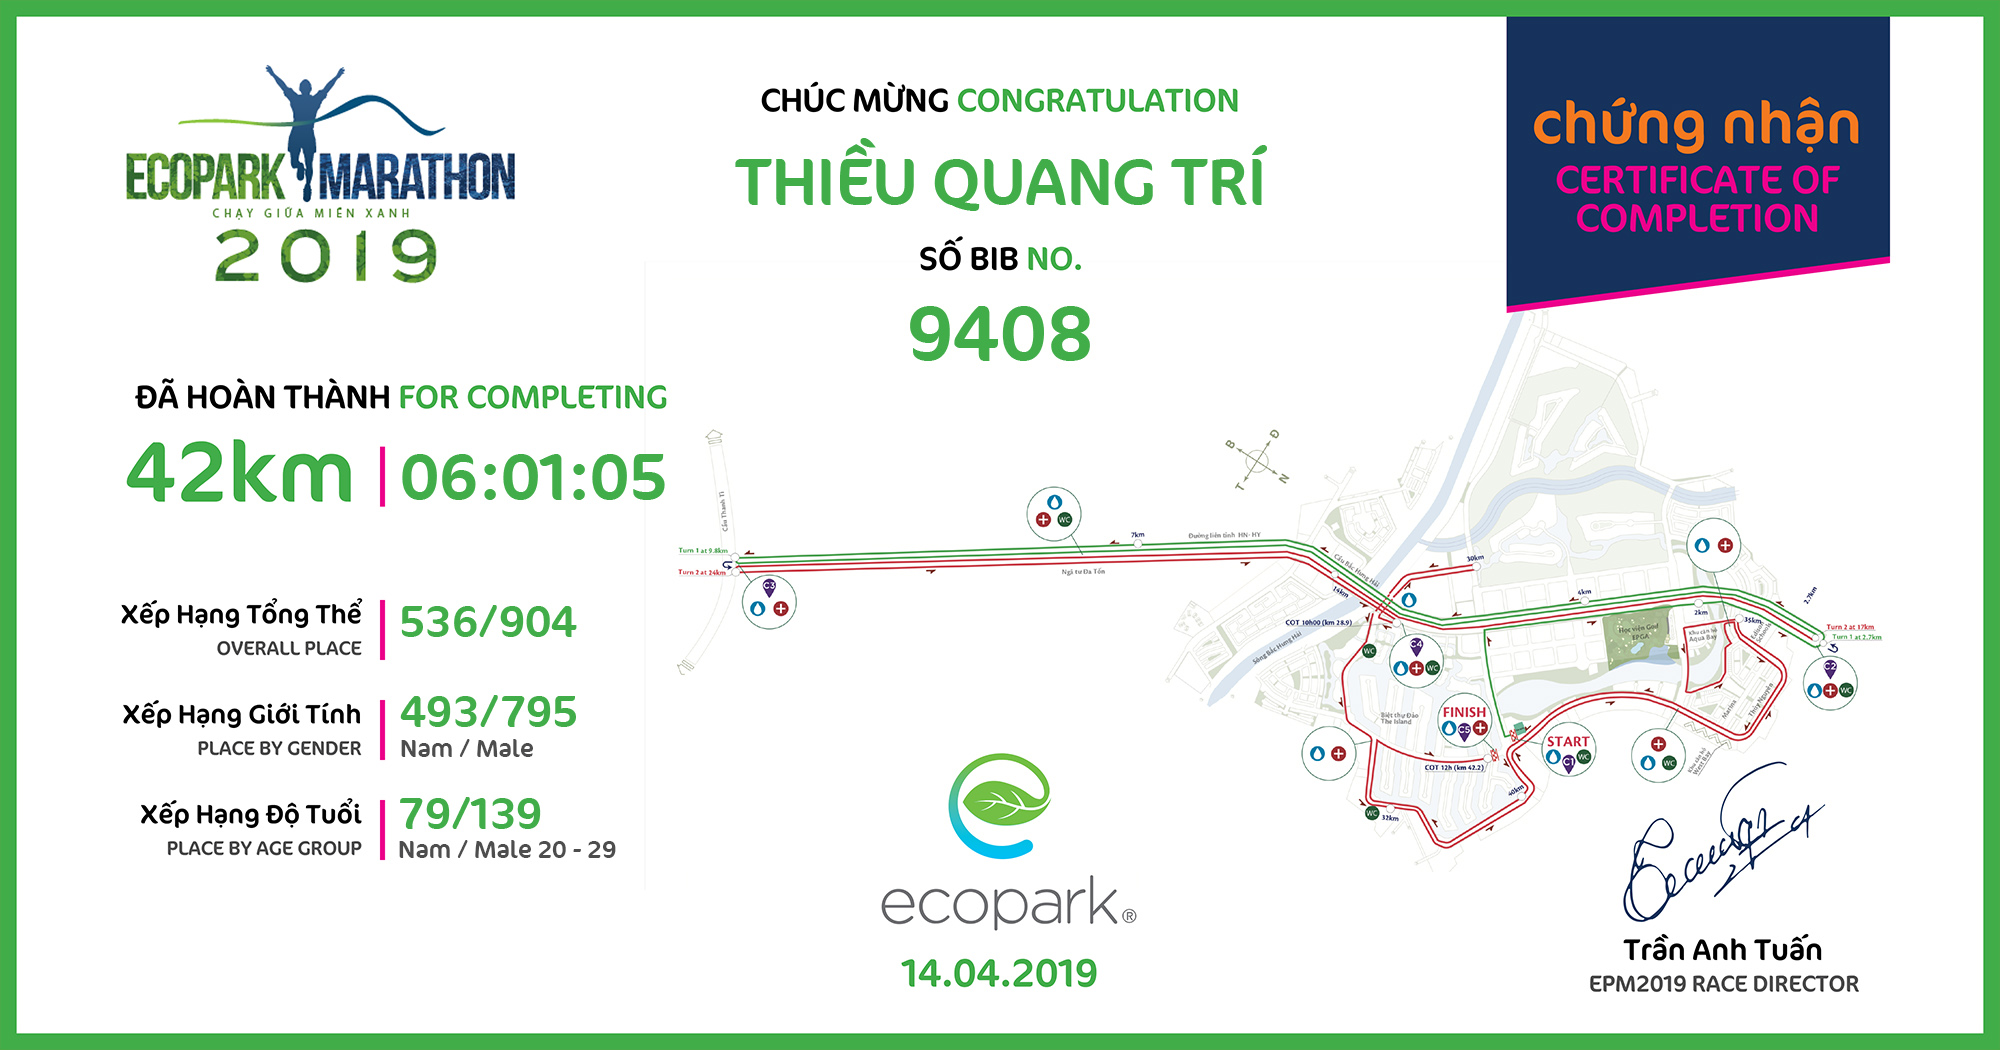 9408 - Thiều Quang Trí